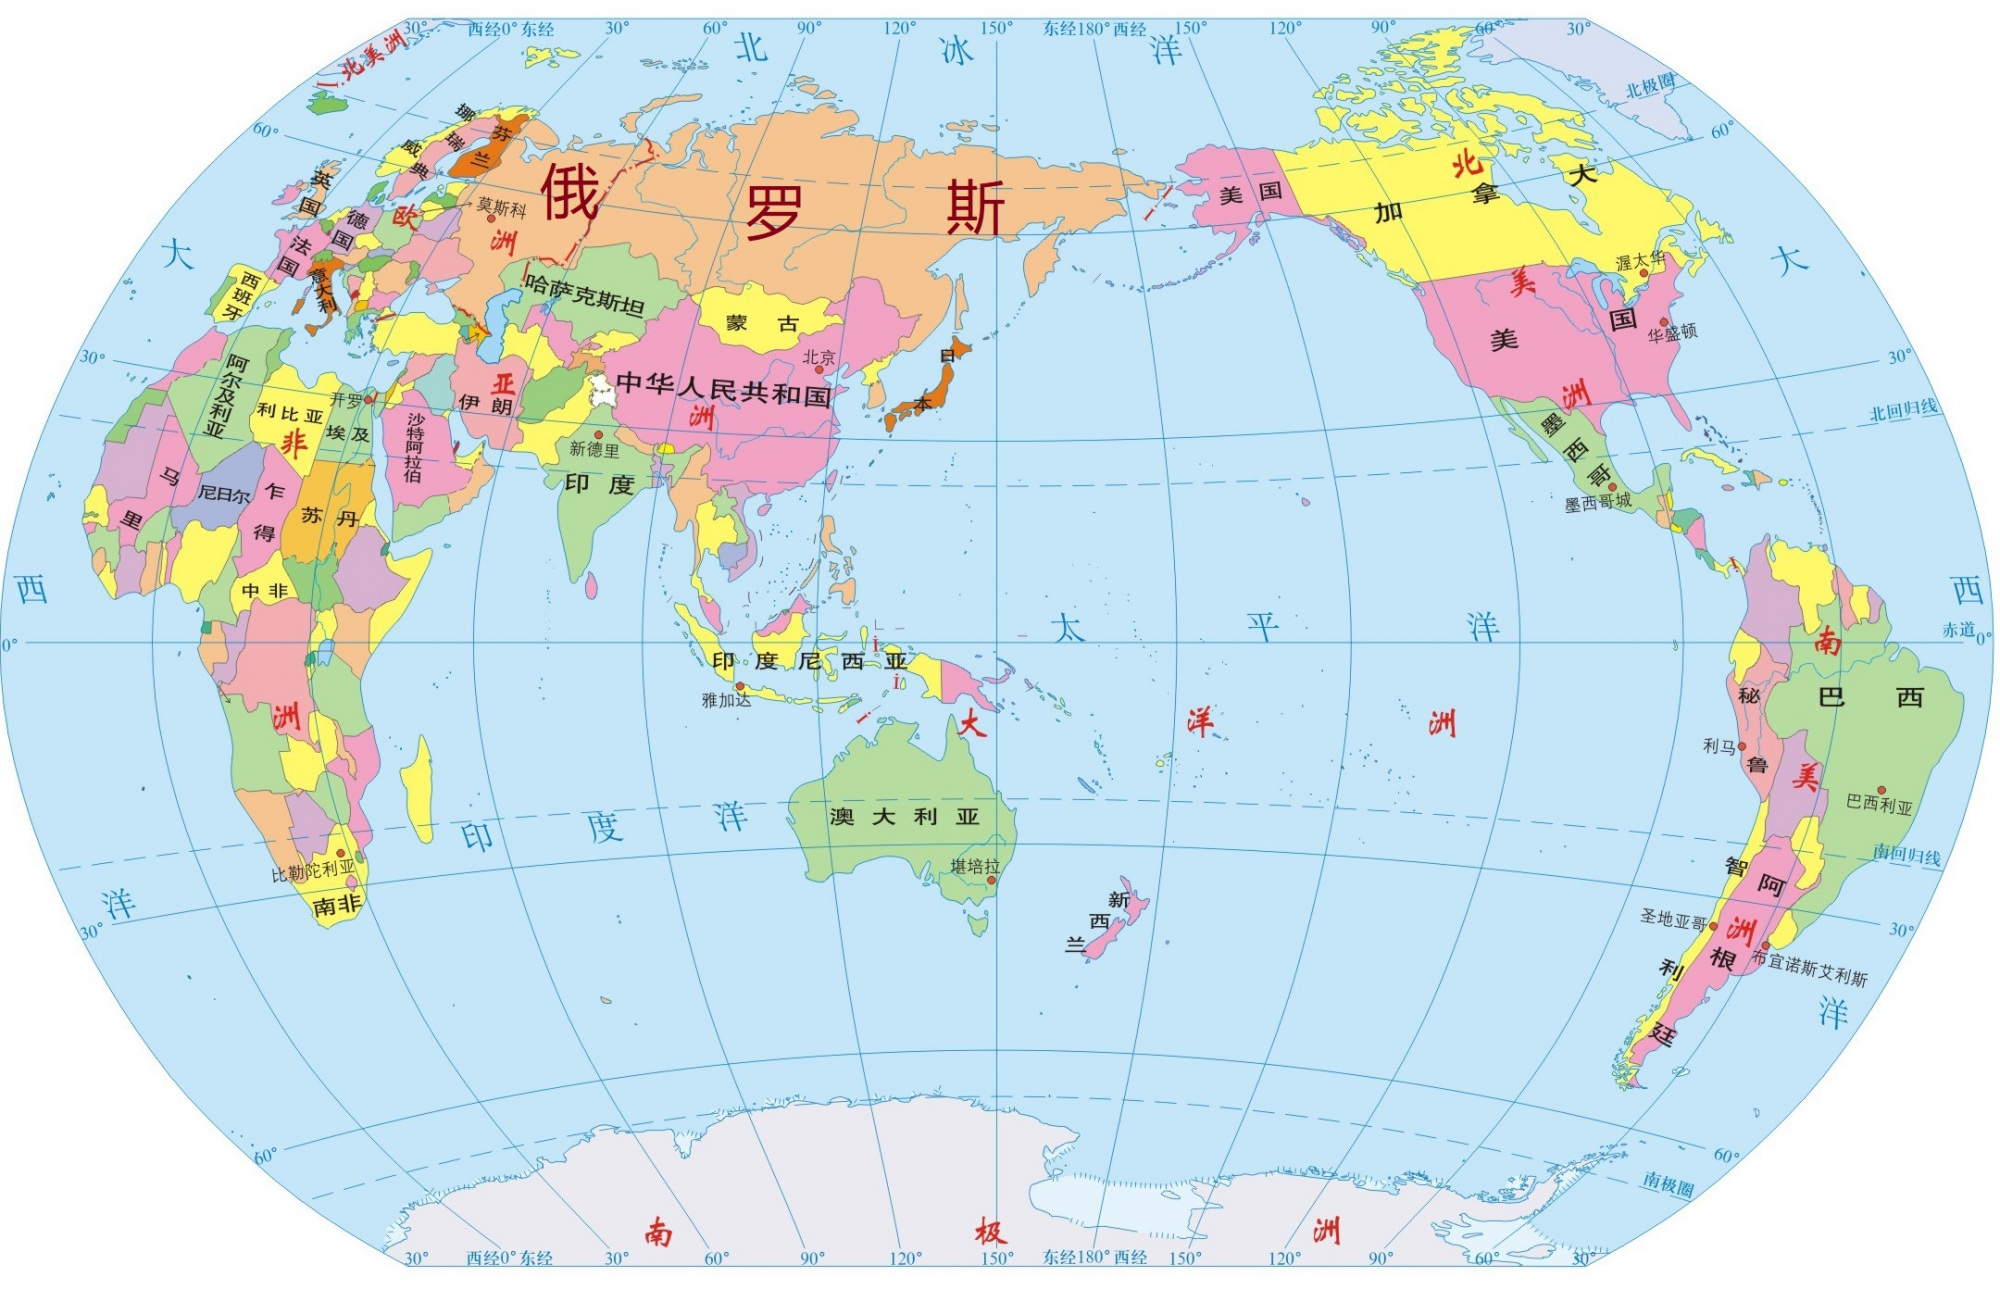 欧亚大陆国家分布地图图片